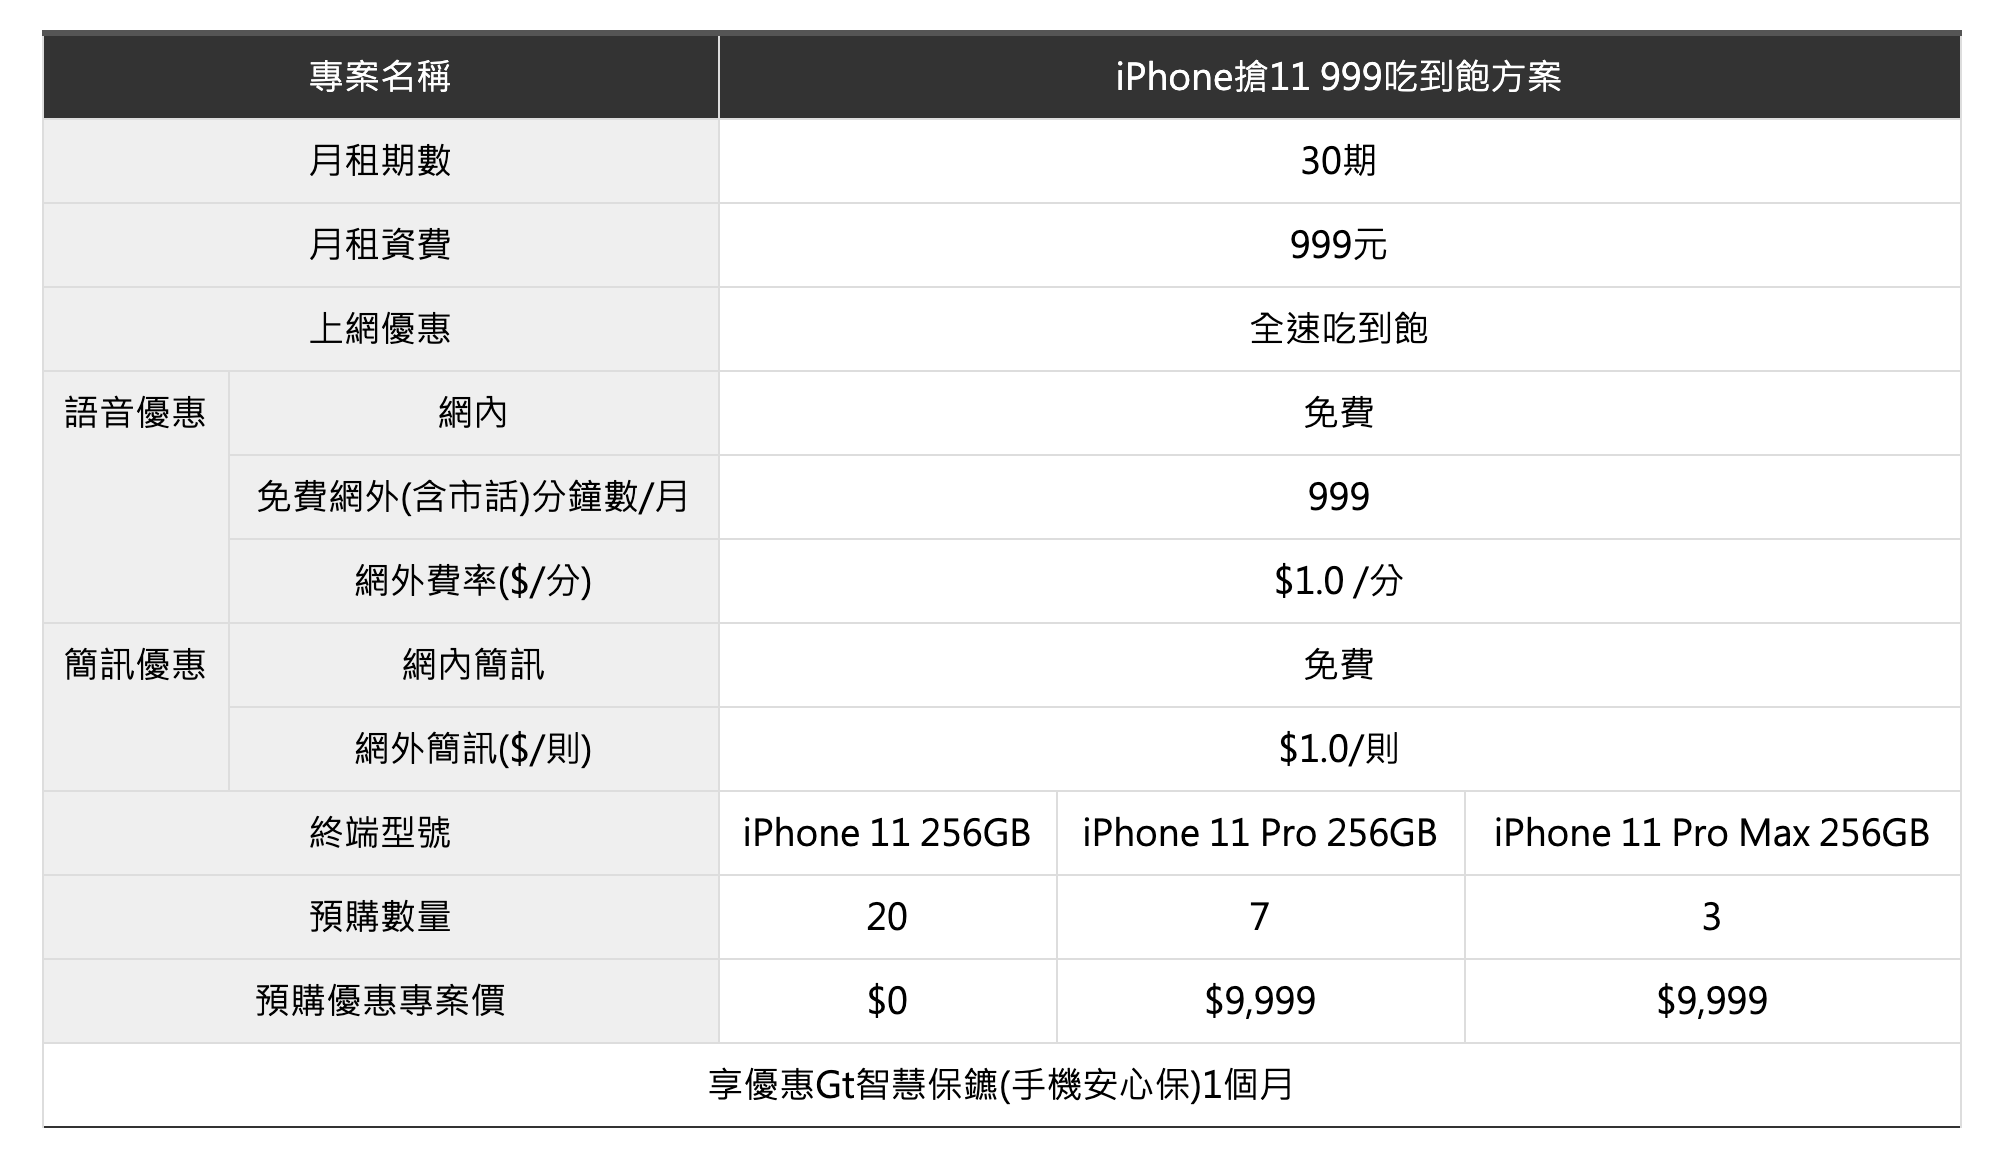 亞太電信 iPhone 11 資費